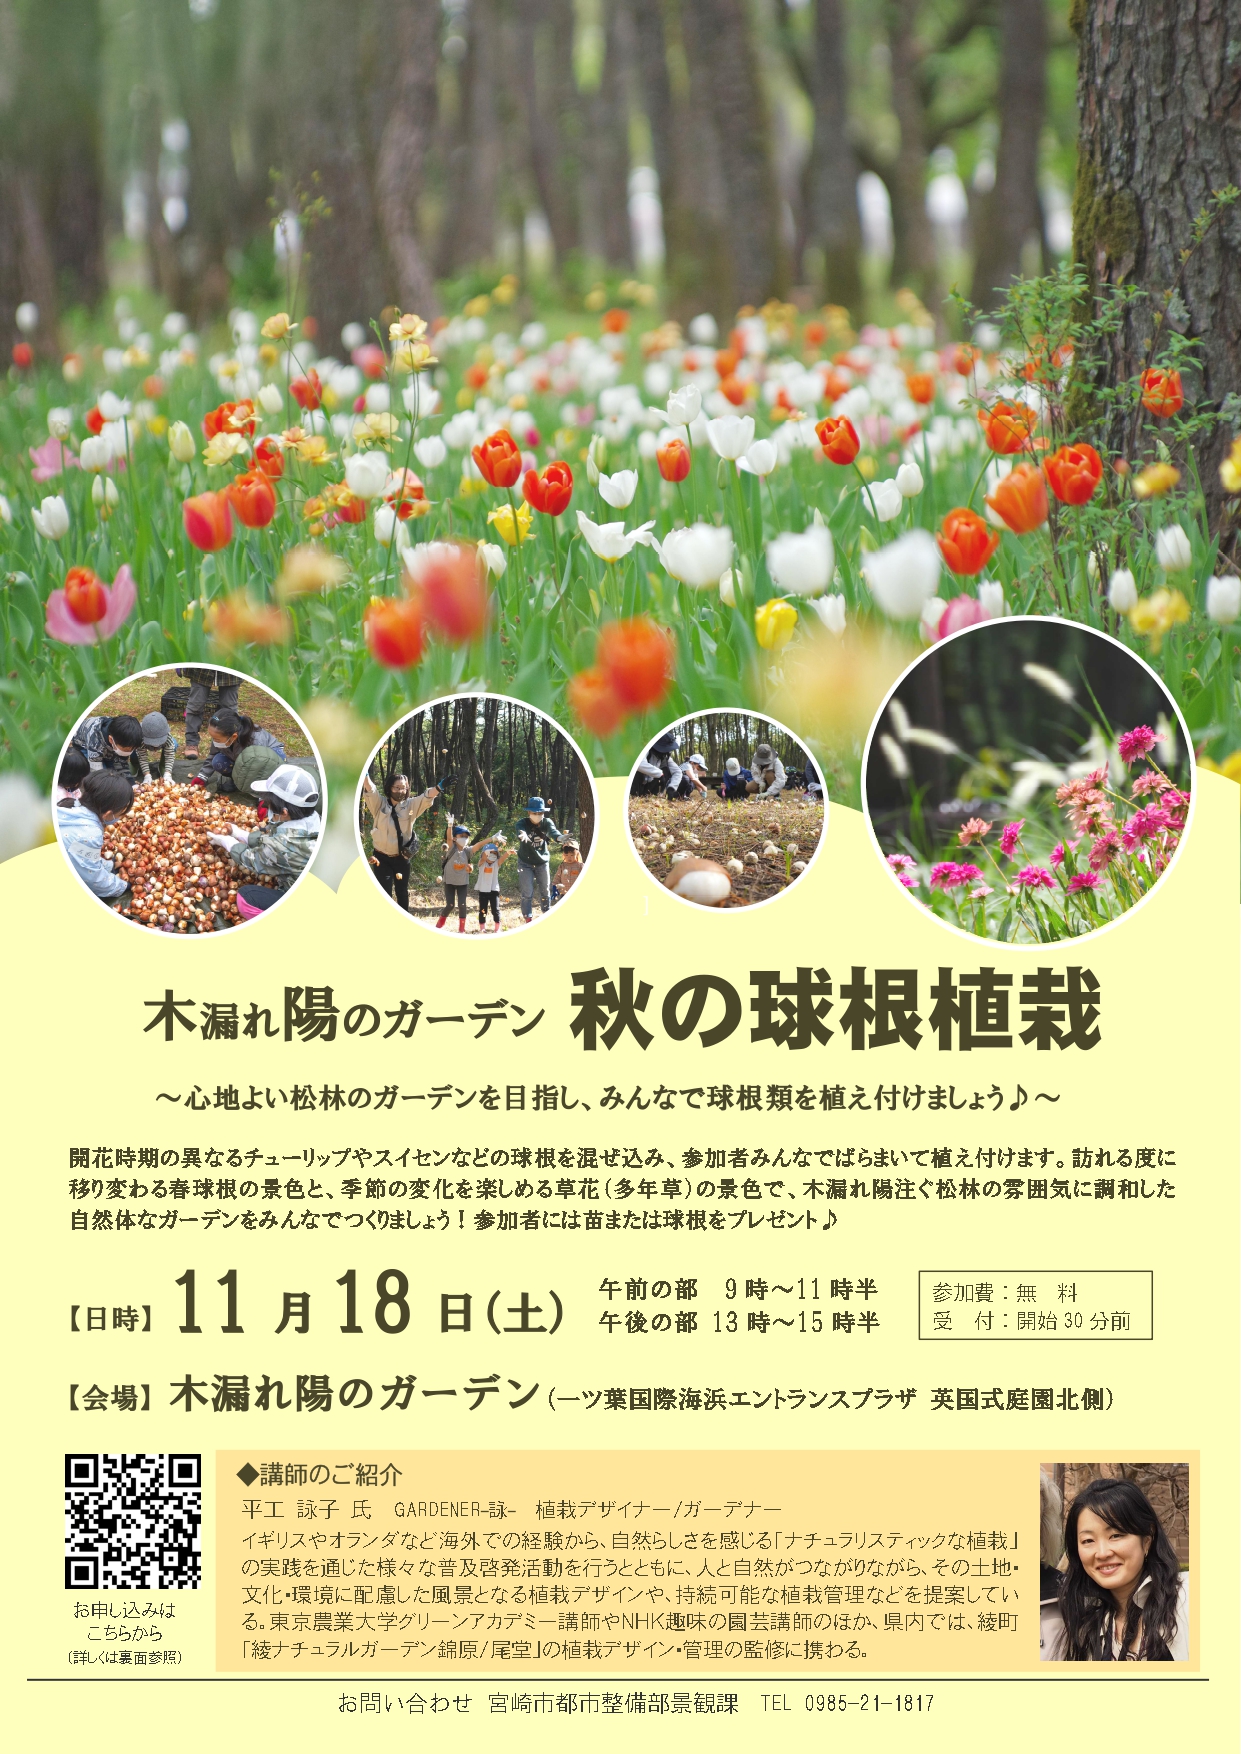 宮崎市イベント 木漏れ陽のガーデン 秋の球根植栽 国際海浜エントランスプラザ 画像2